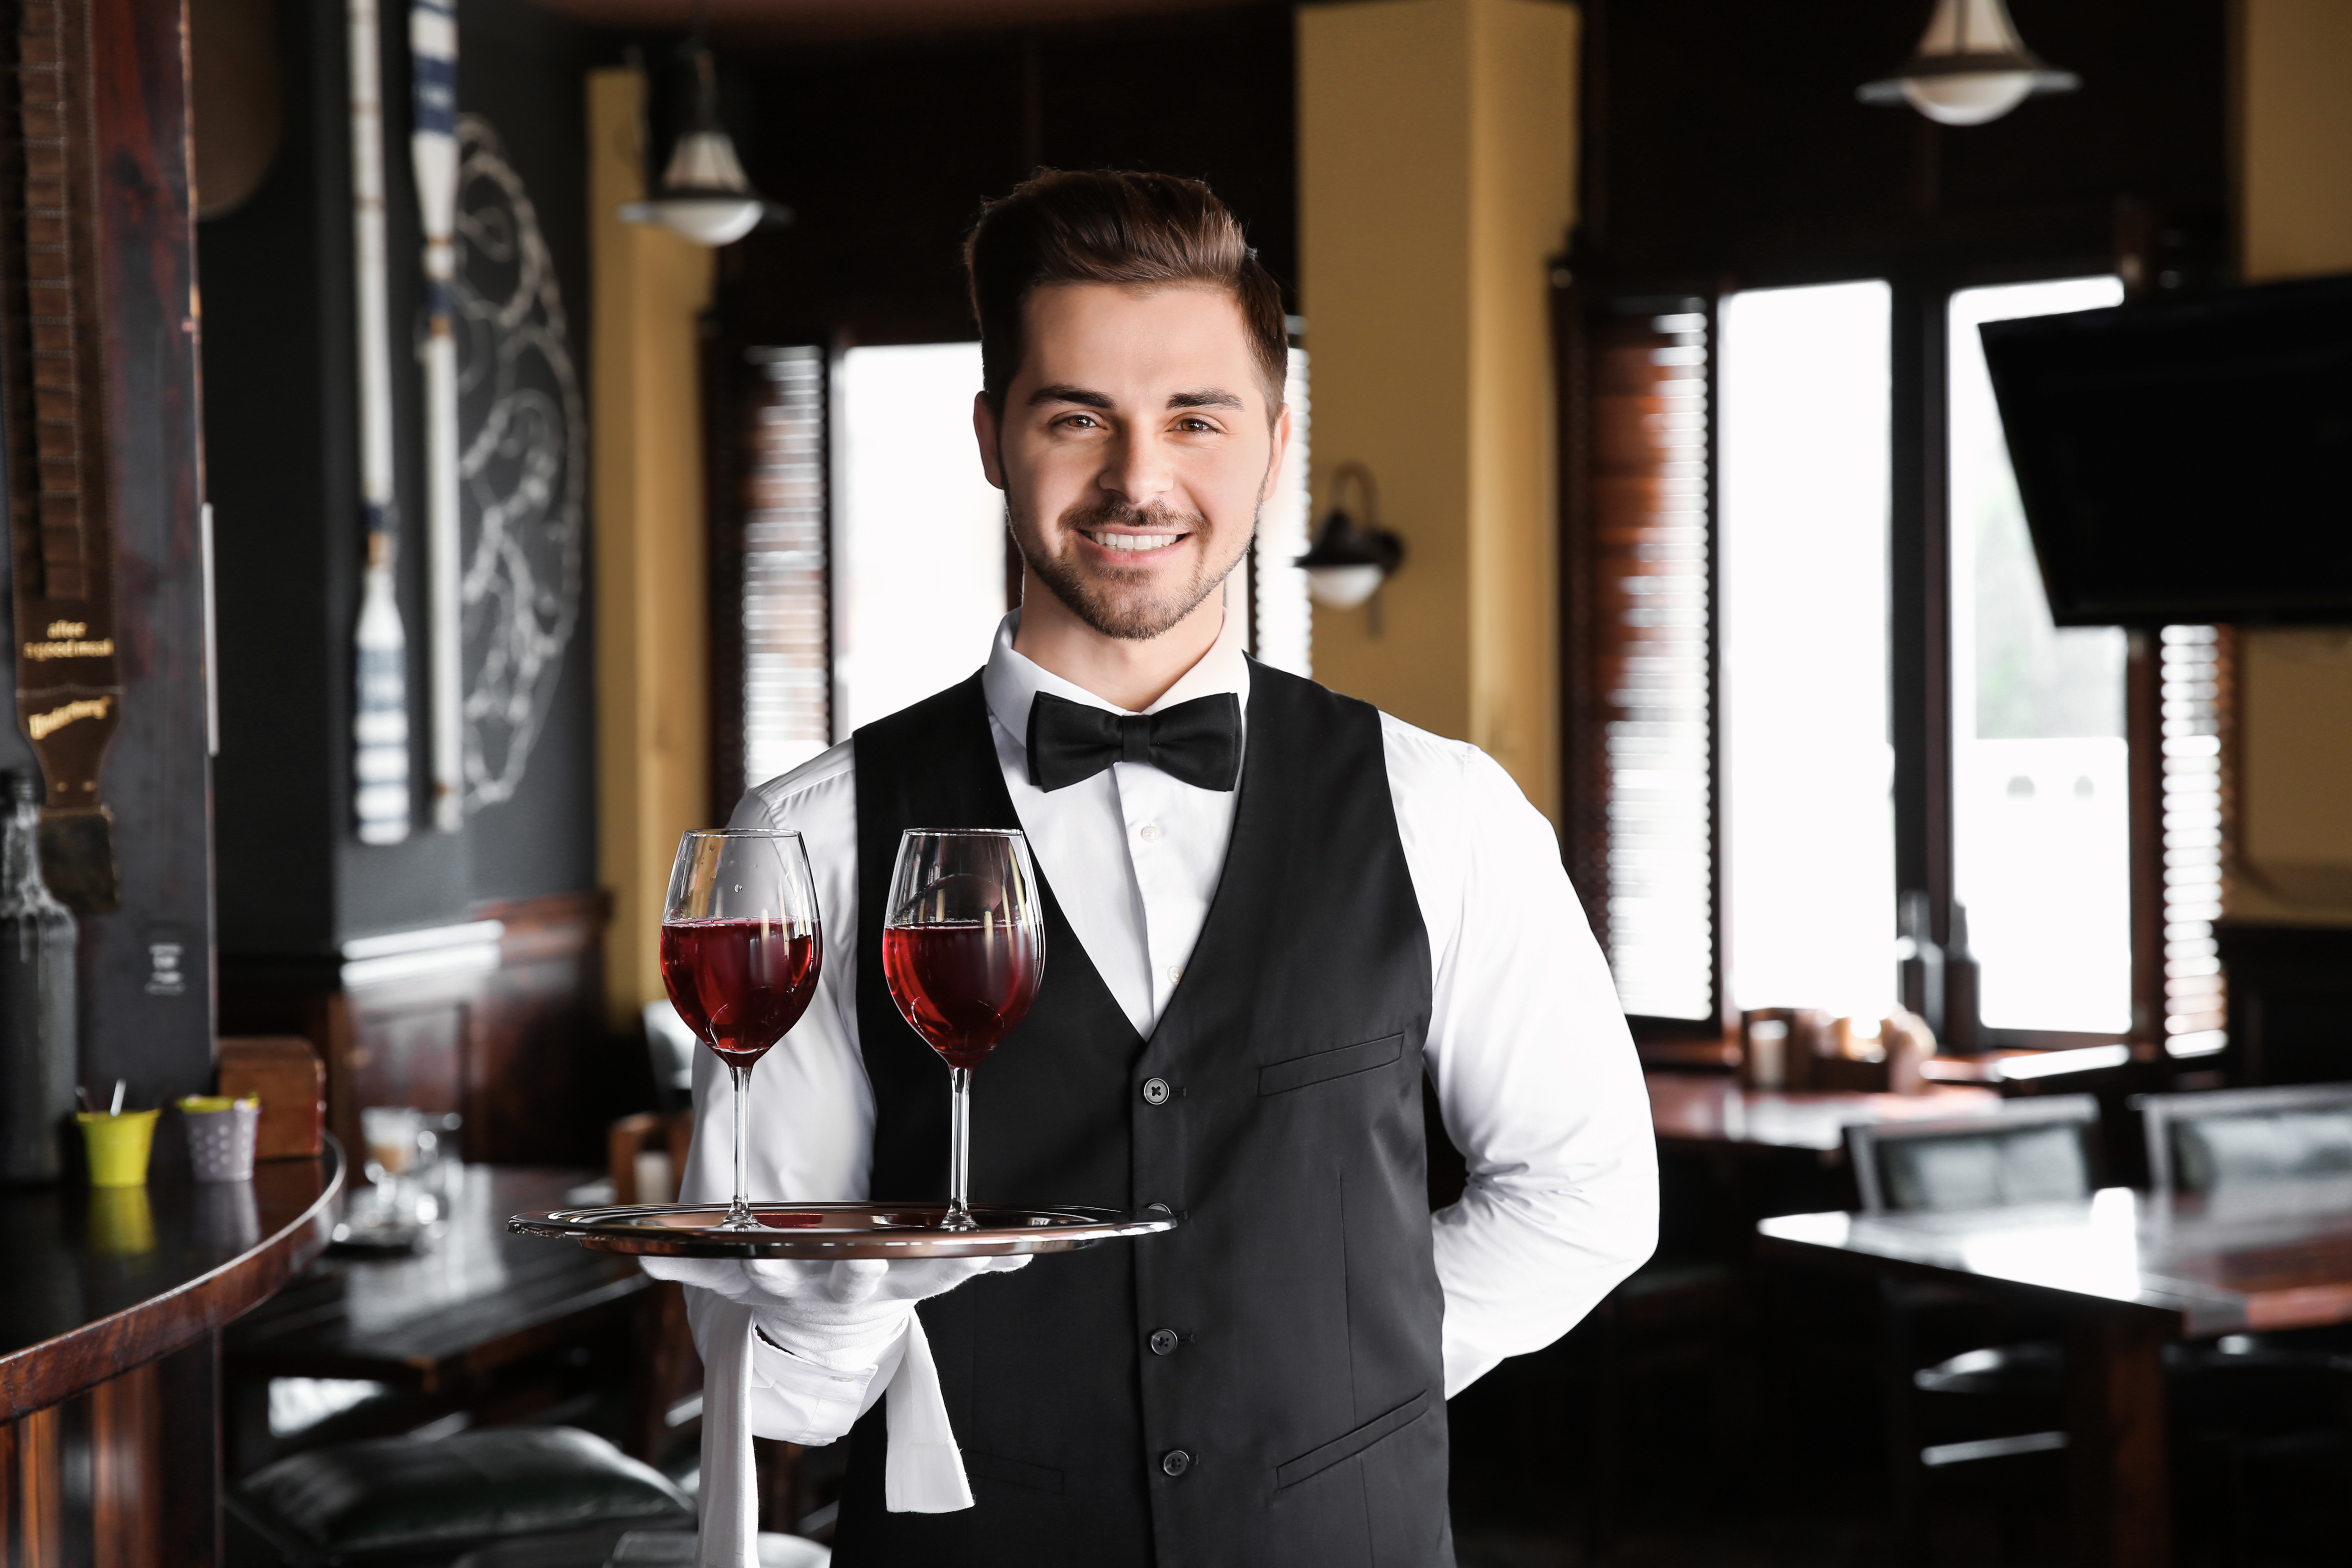 Junge, männliche Servicekraft mit Weingläsern im Restaurant